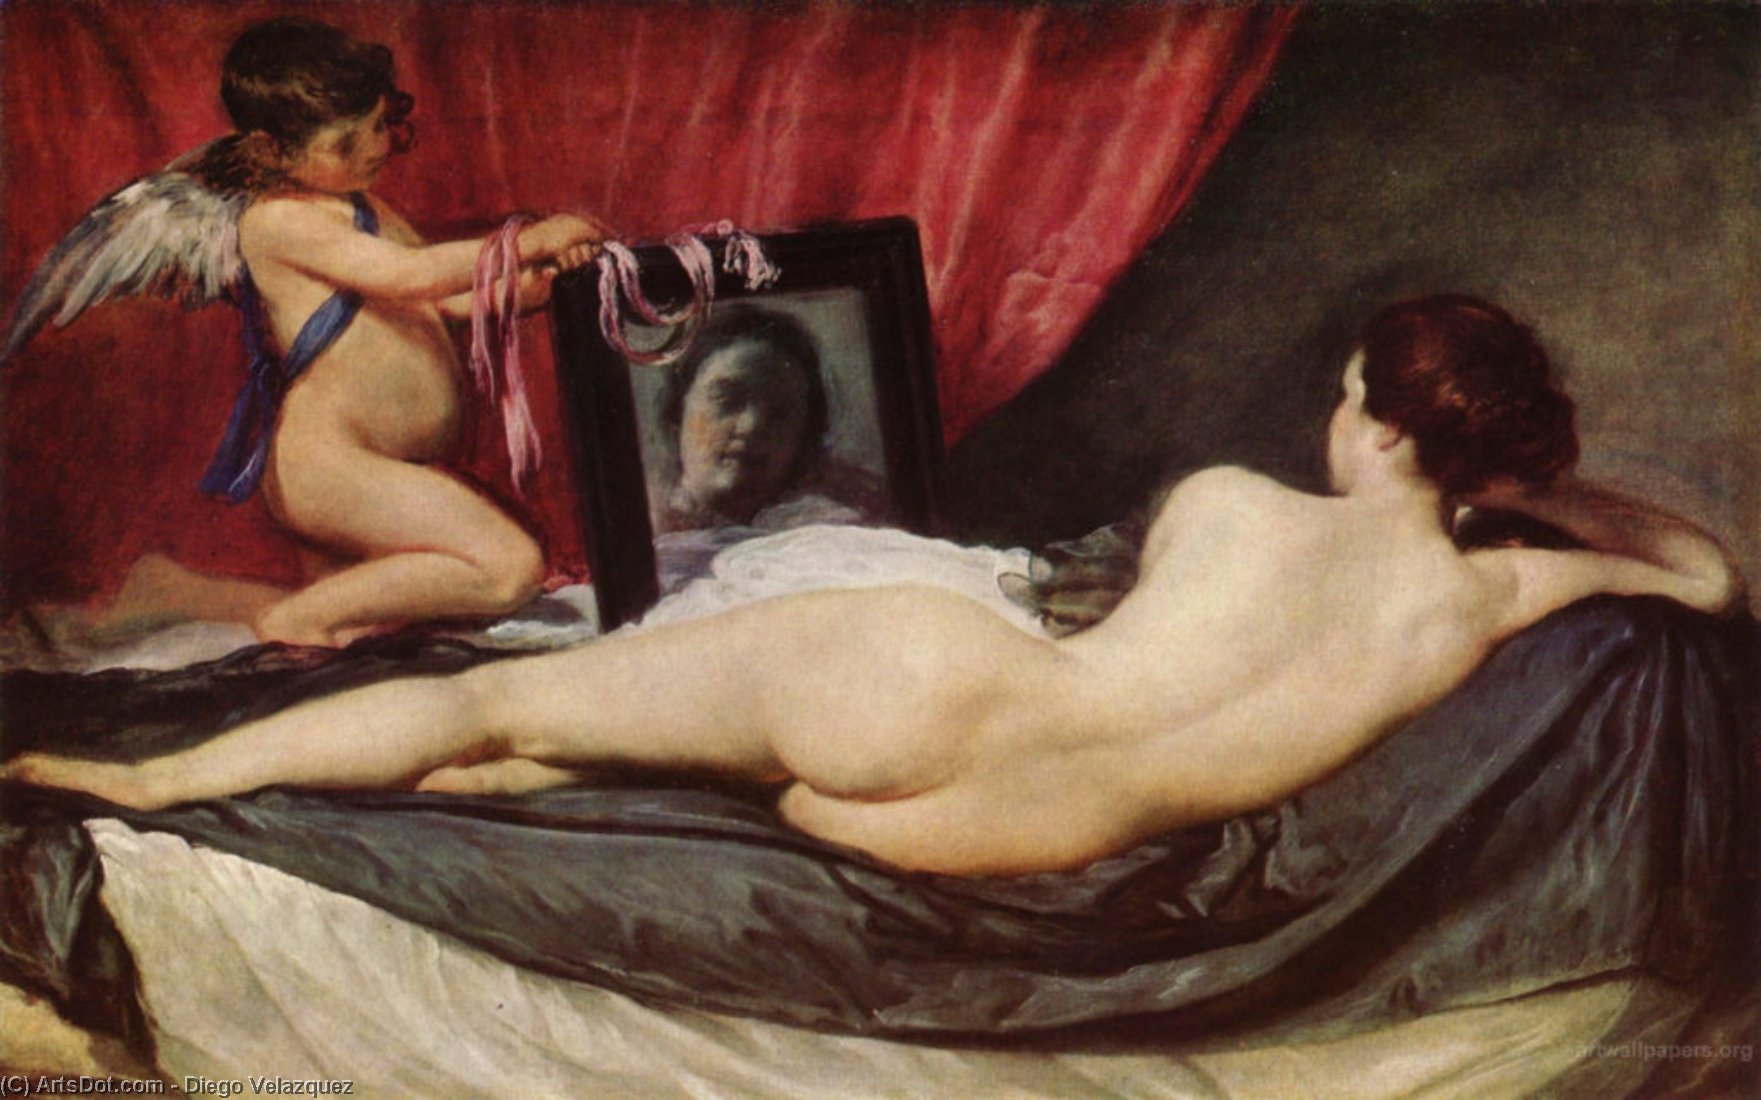 WikiOO.org - Enciclopédia das Belas Artes - Pintura, Arte por Diego Velazquez - The Rokeby Venus